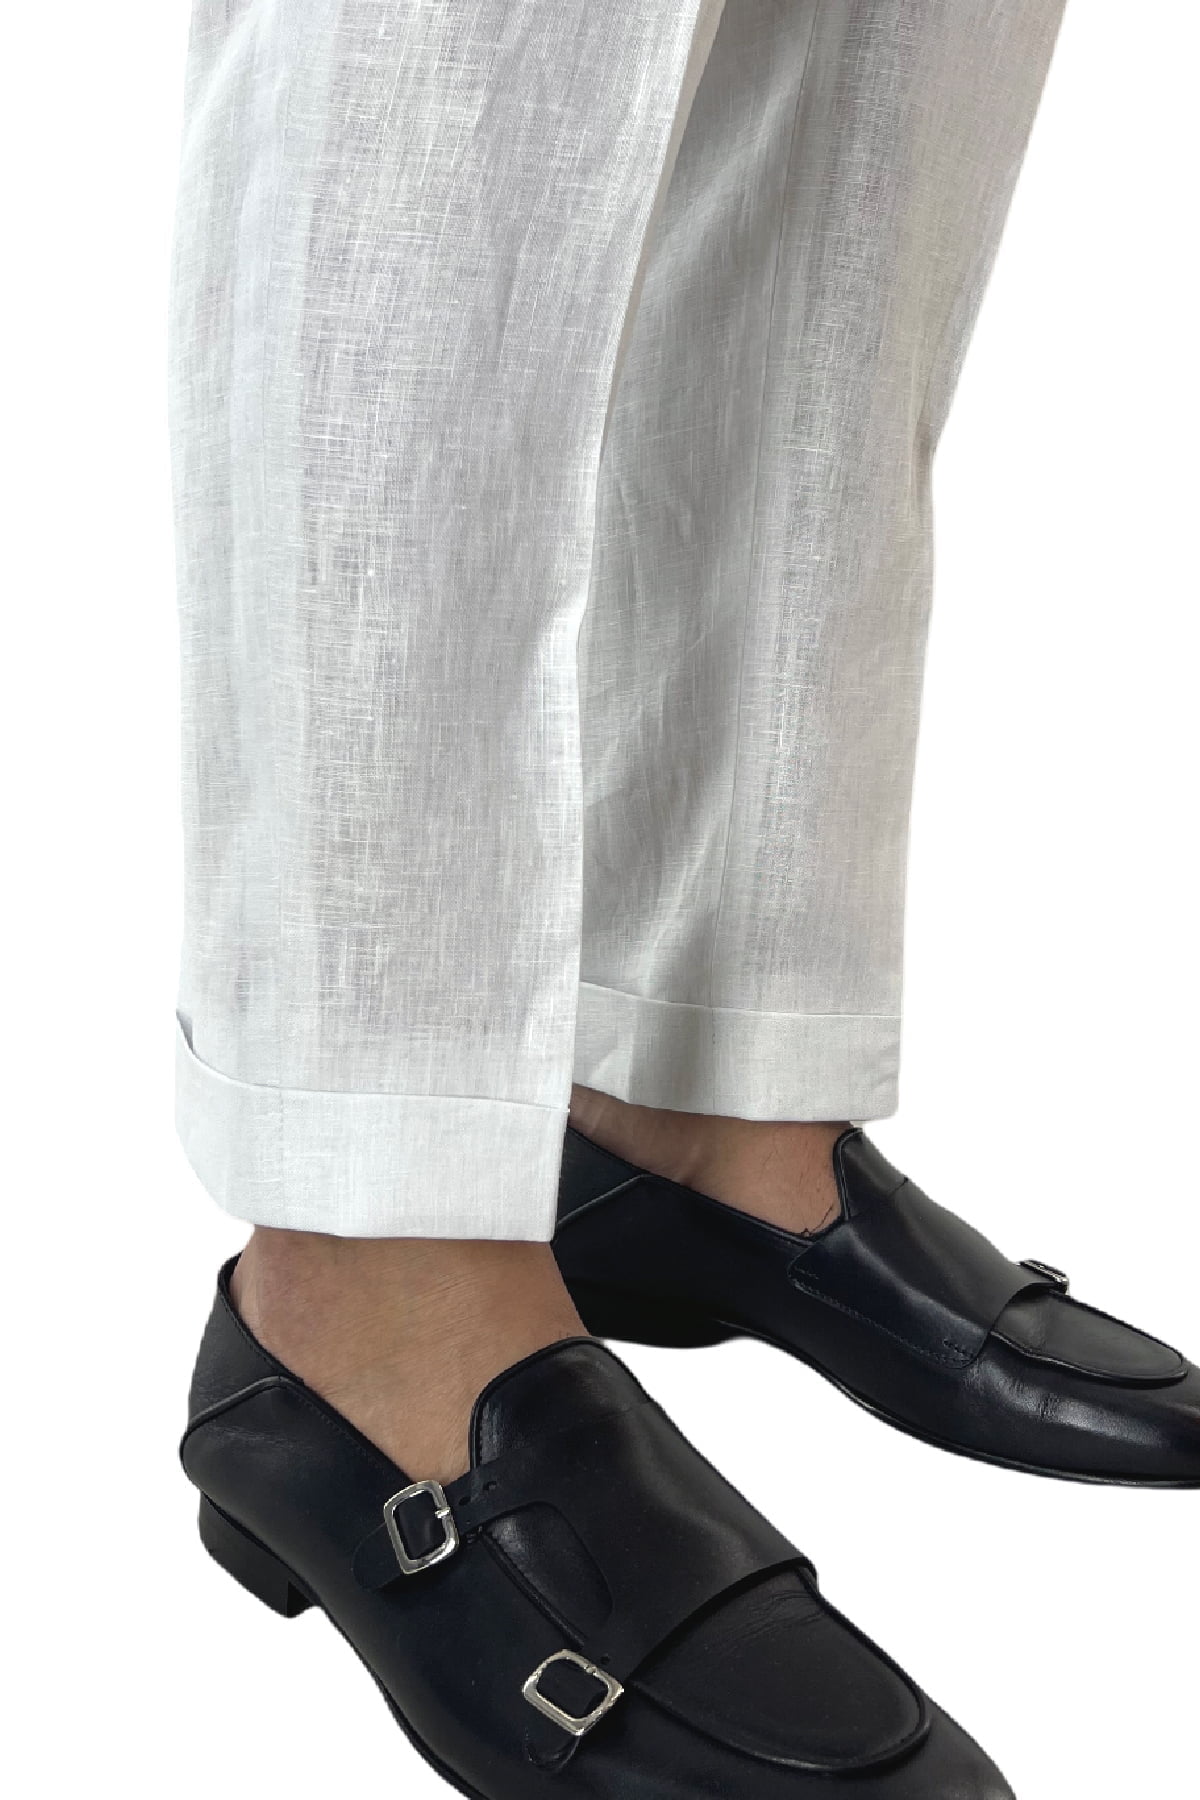 Pantalone uomo bianco in lino 100% vita alta con pinces fibbie laterali e risvolto 4cm